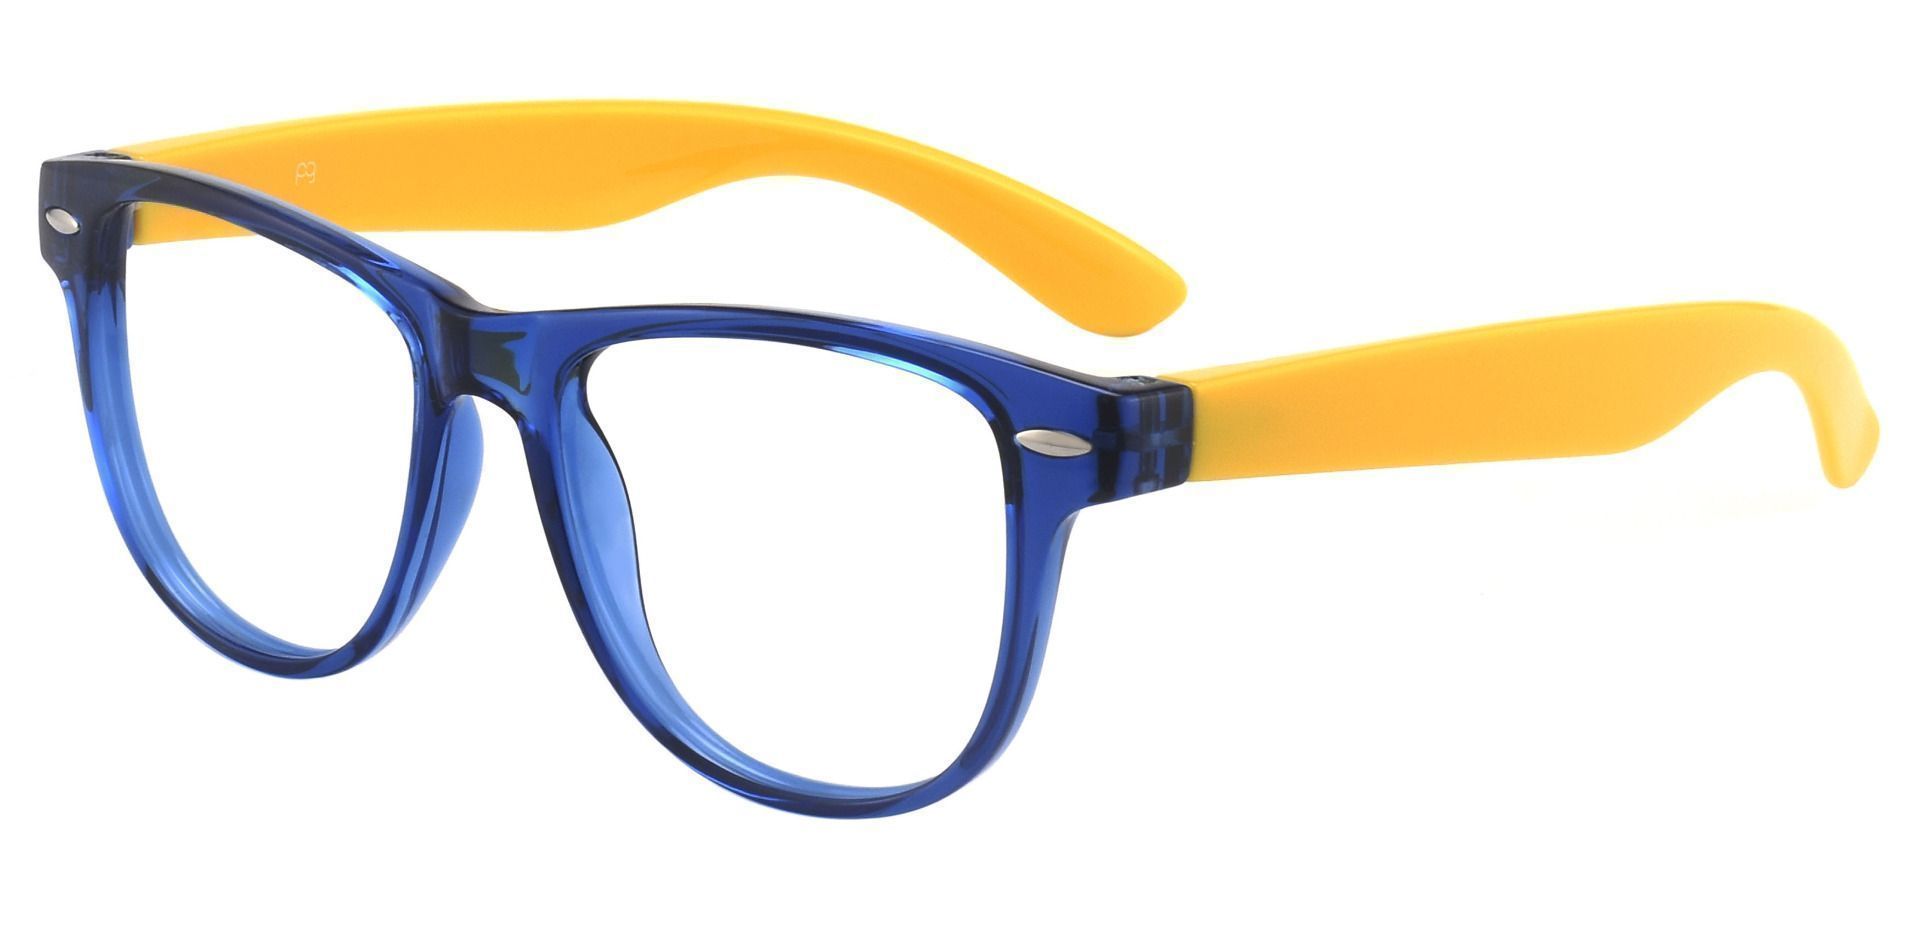 Radio Square Prescription Glasses - Blue